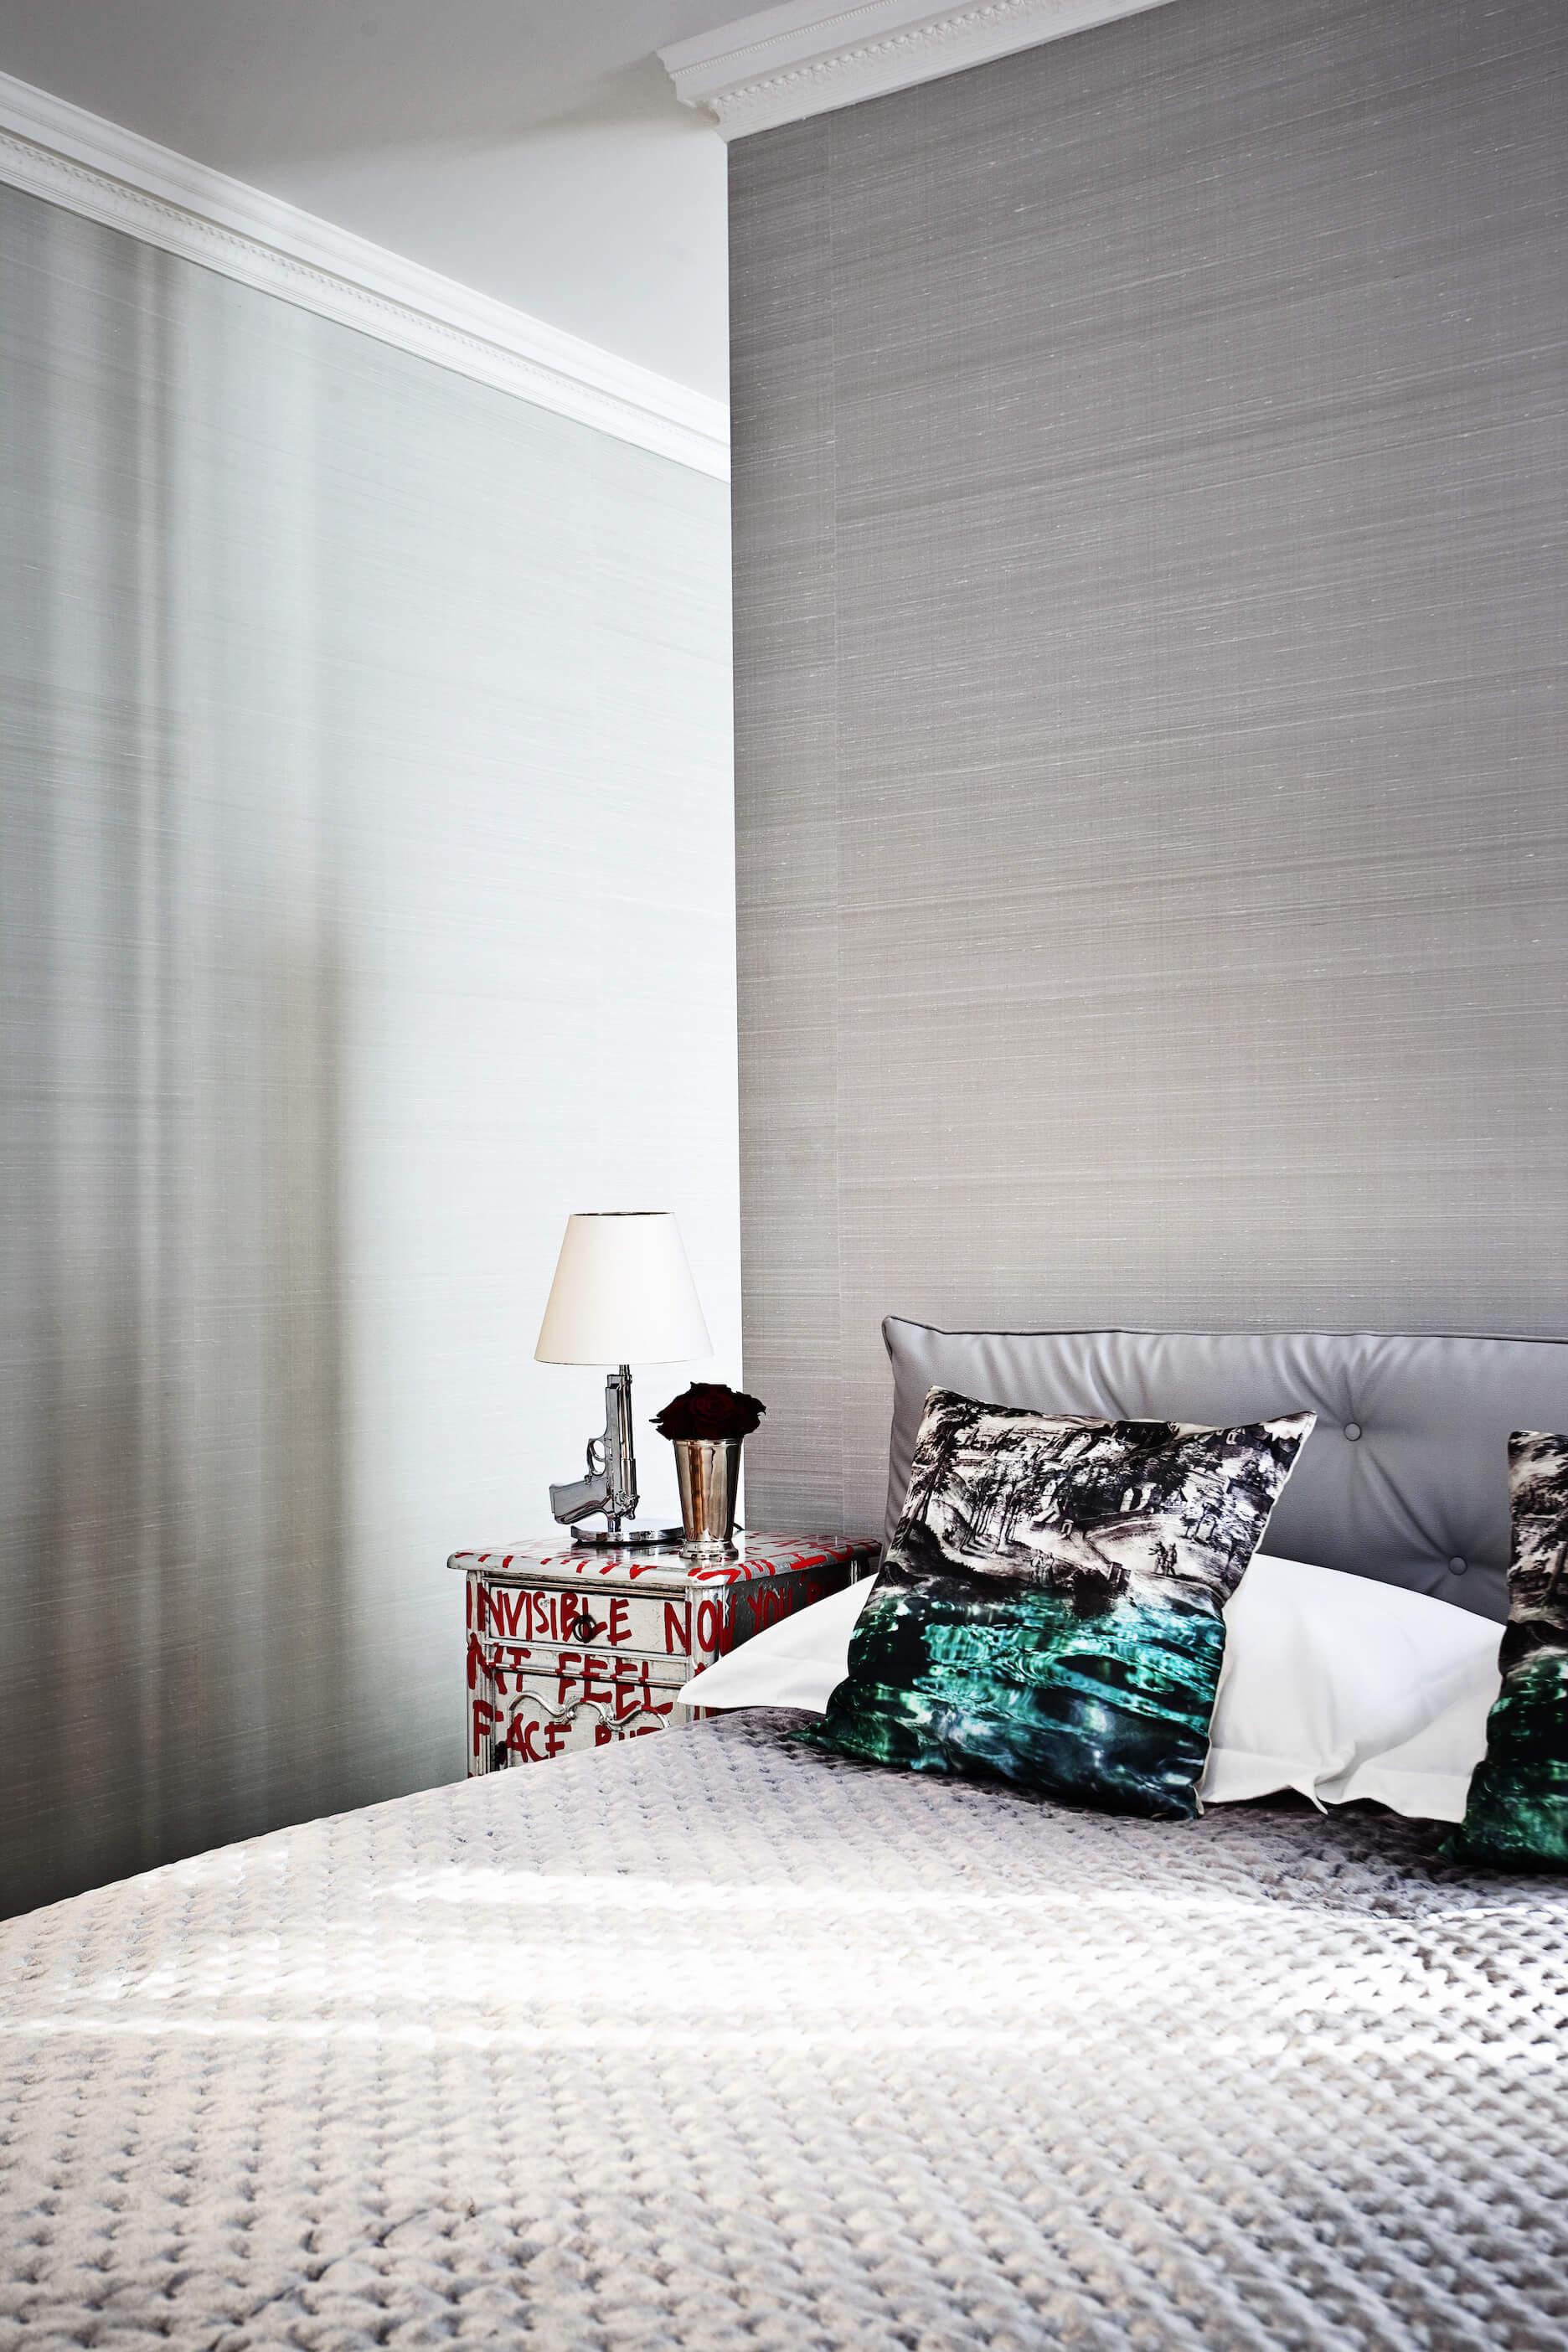 另一间卧室风格完全转变，以银色调突出，刷墙上方是一套独特的纹理床。